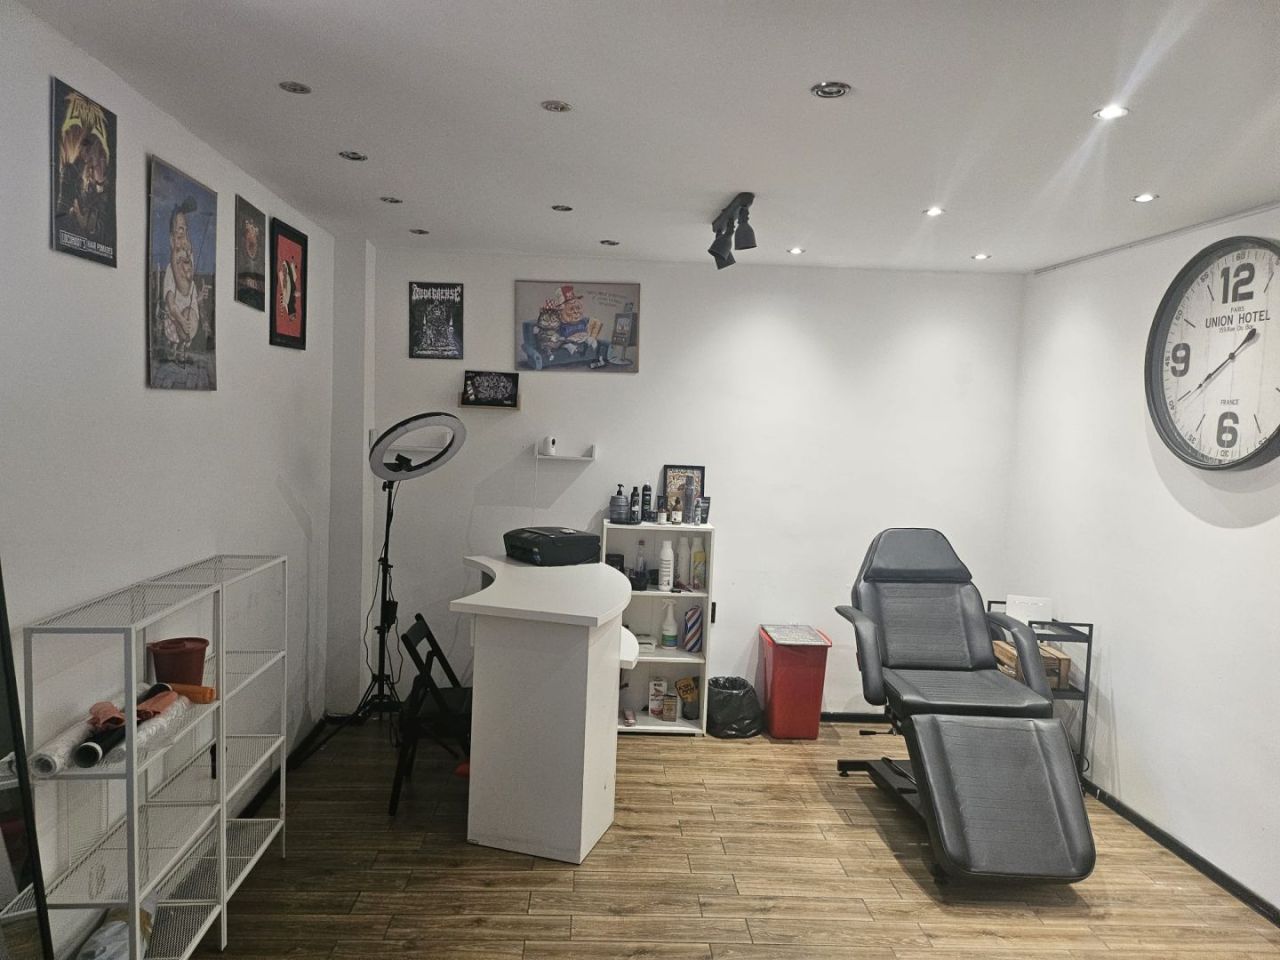 Sprzedaż Salonu Barbershop z kompletnym wyposażeniem i bazą Klientów: zdjęcie 93938685